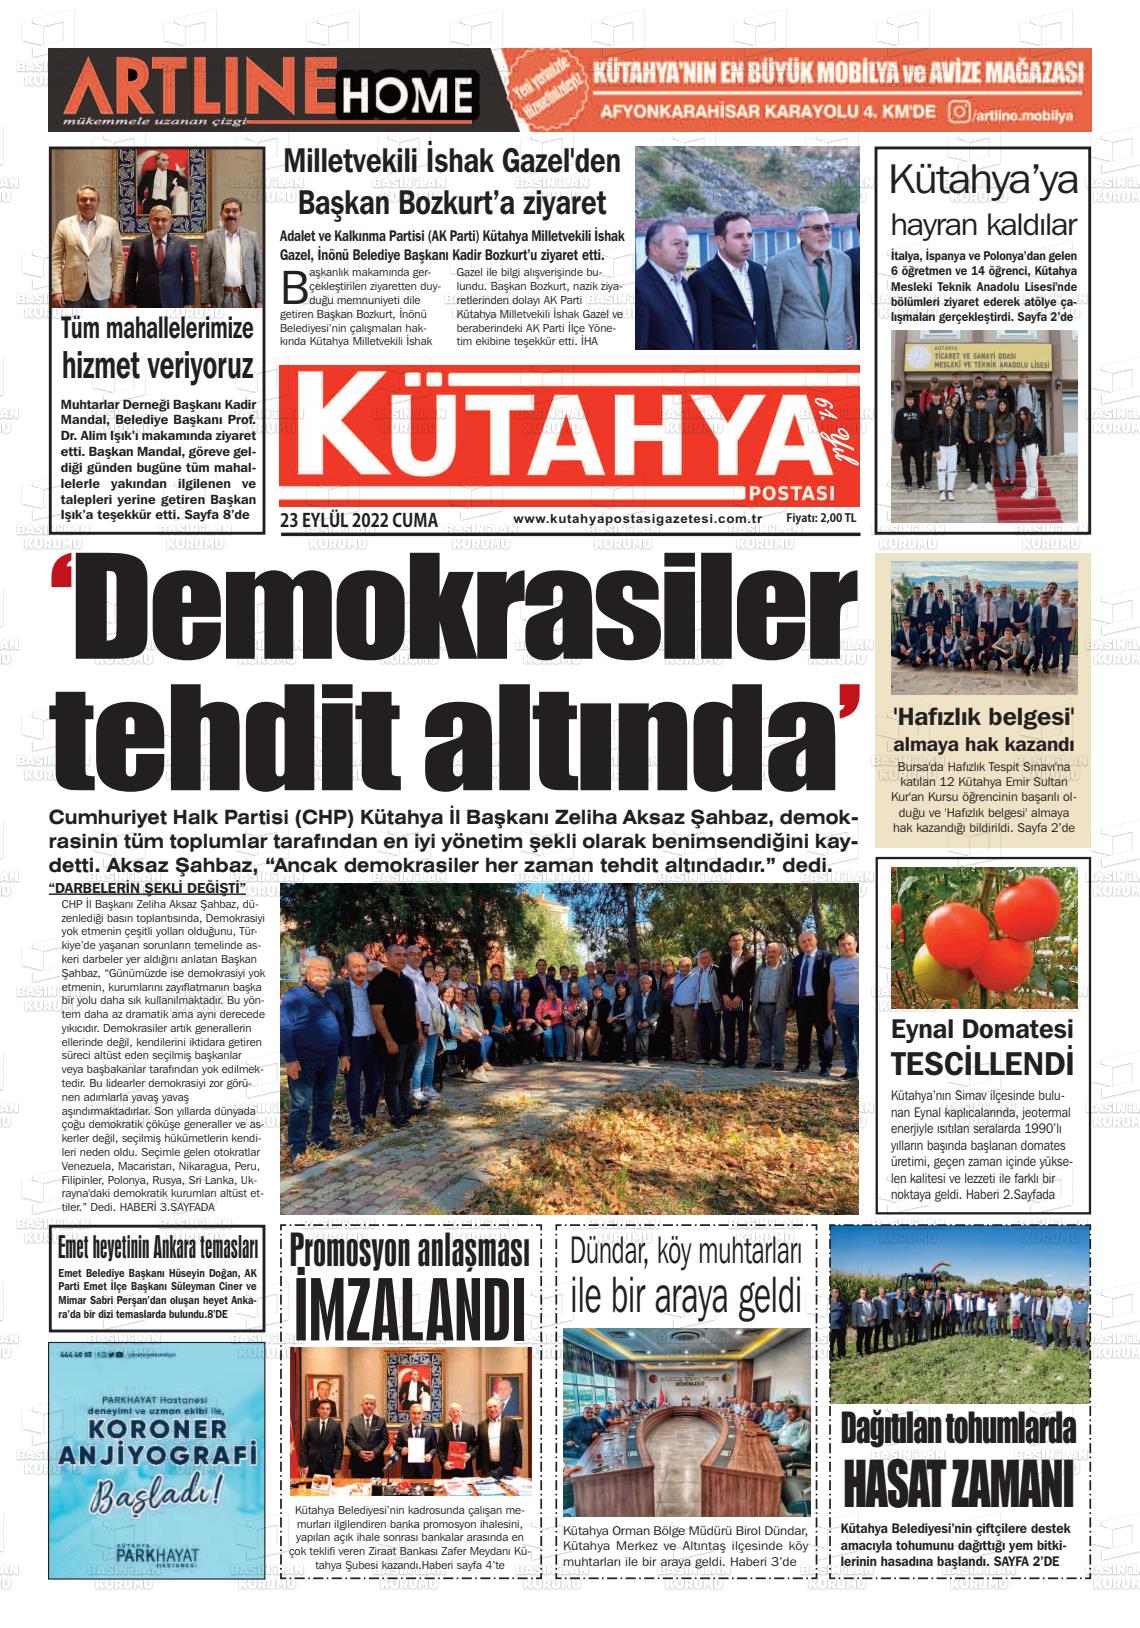 23 Eylül 2022 Kütahya Postası Gazete Manşeti